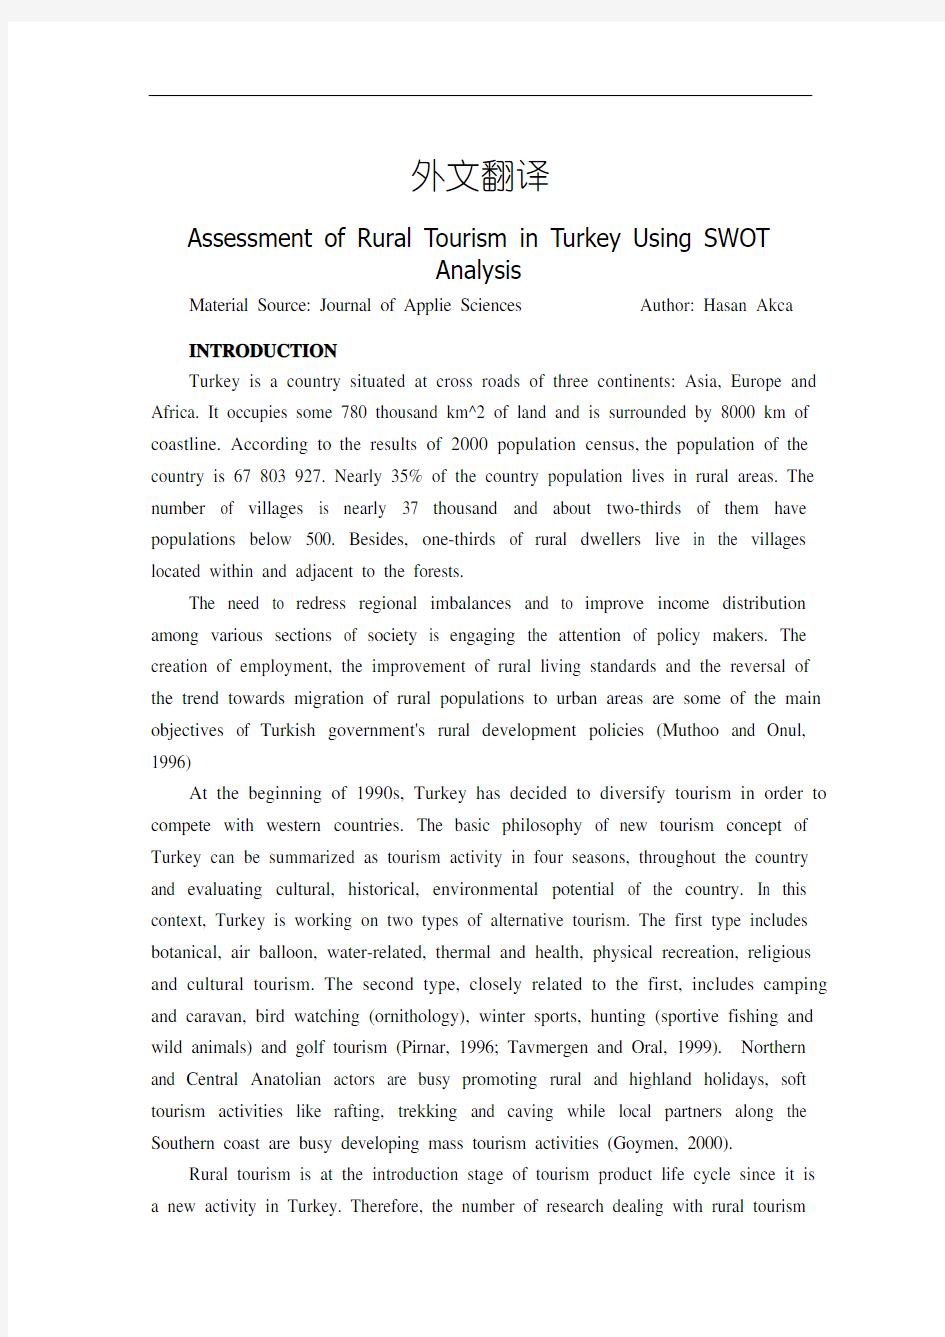 乡村旅游在土耳其的评估使用SWOT分析【外文翻译】